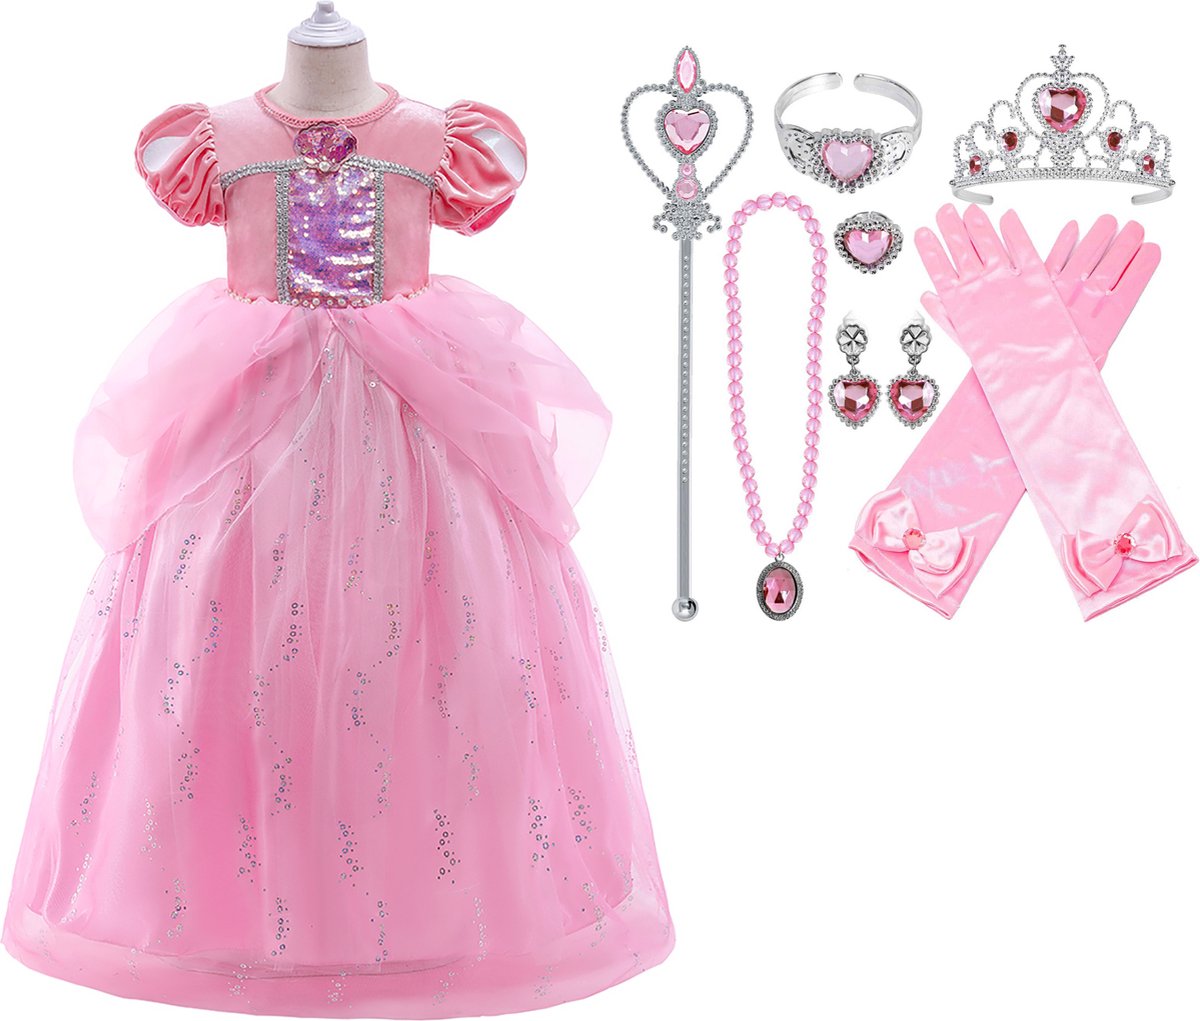 Prinsessenjurk meisje - Prinses Ariel - Roze - 98(100) + Tiara (Kroon) / Toverstaf + Juwelen + Handschoenen - Zeemeermin verkleedkleren